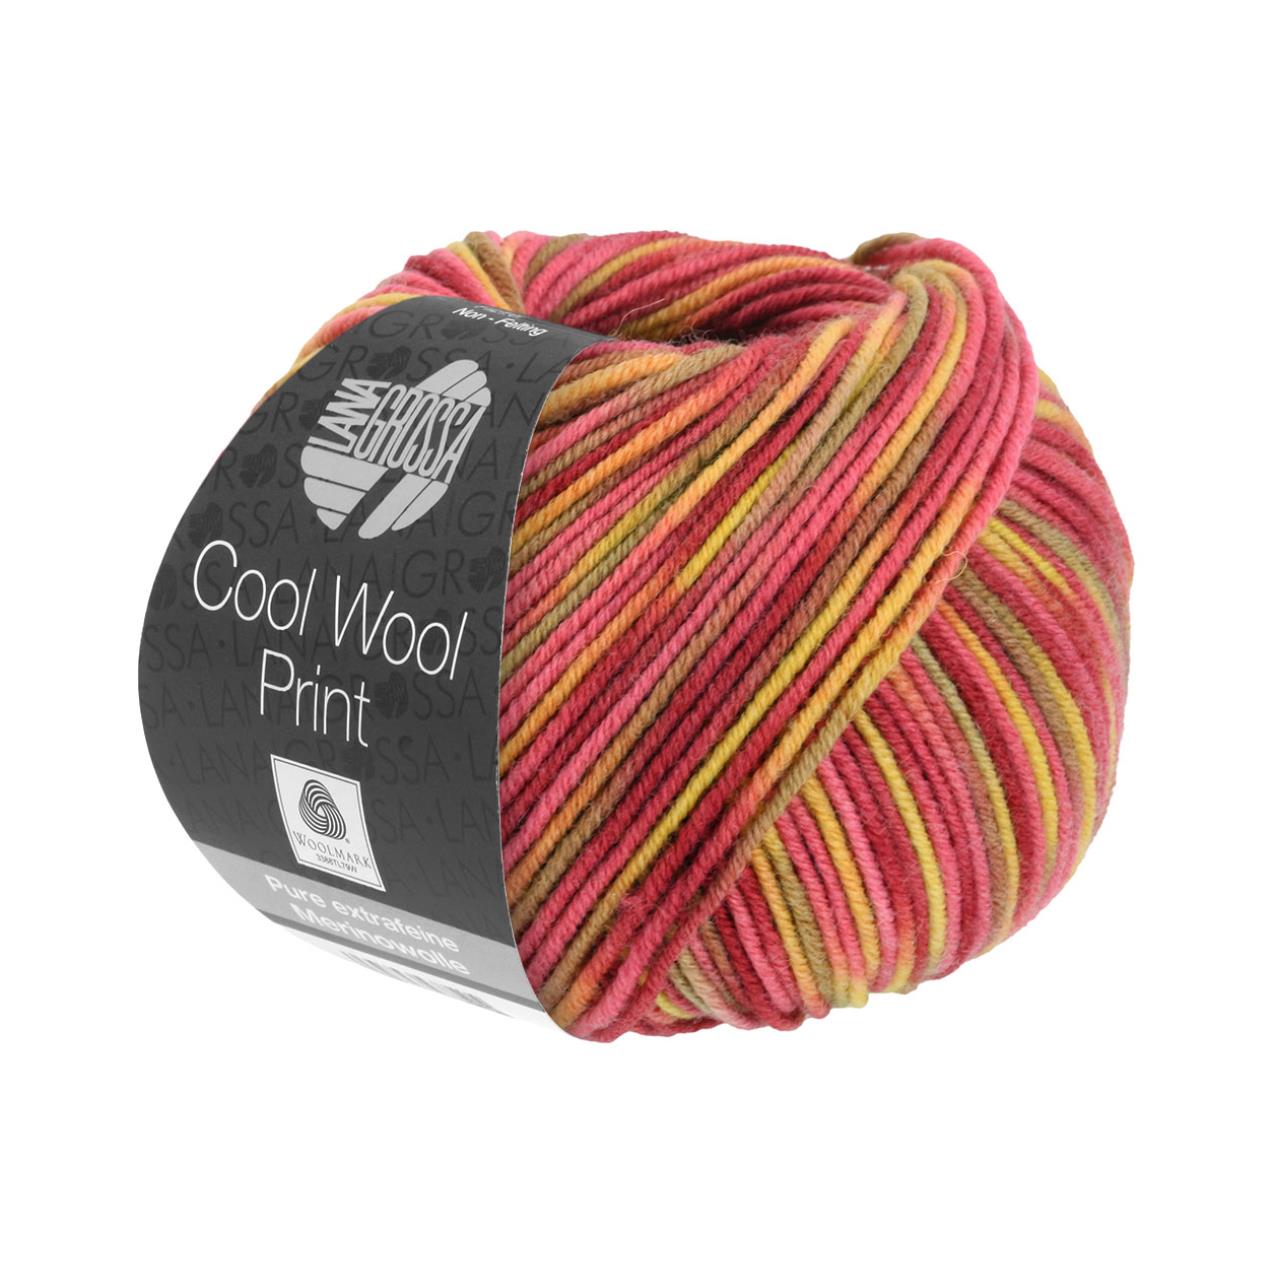 Cool Wool Print 825 Gelb/Orange/Camel/Nougat/Rot/Dunkelrot